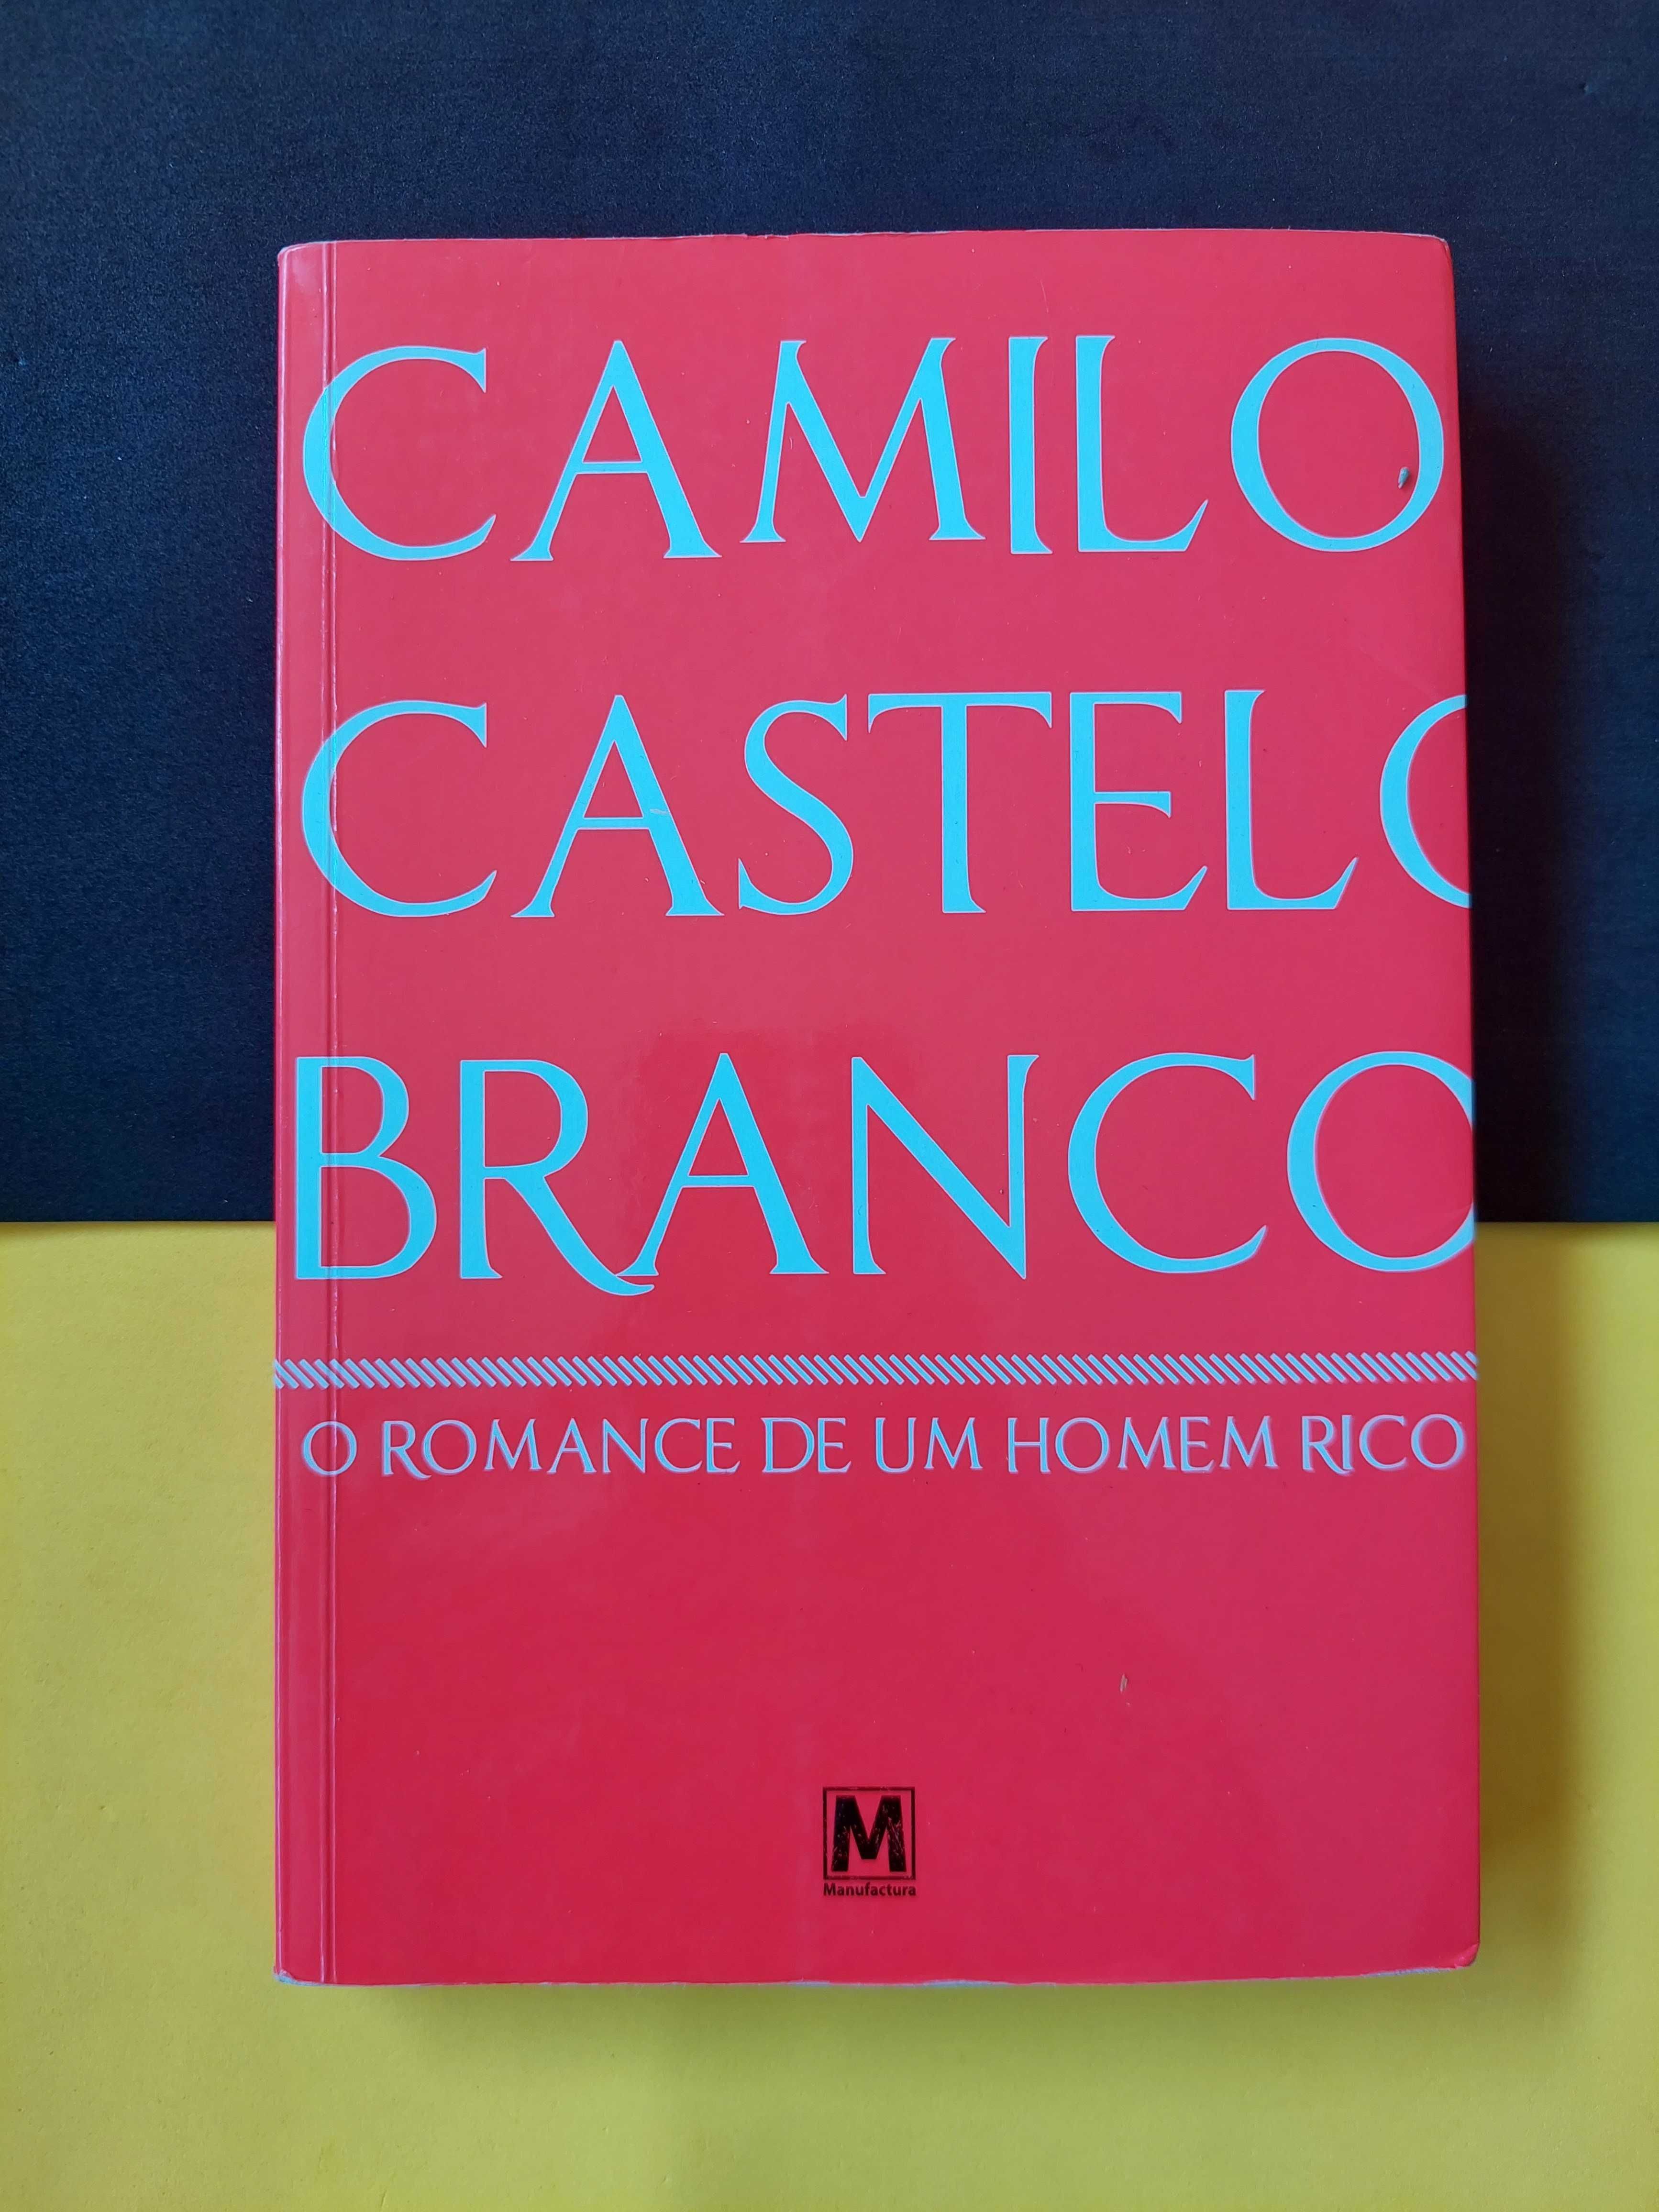 Camilo Castelo Branco - O Romance de um homem rico